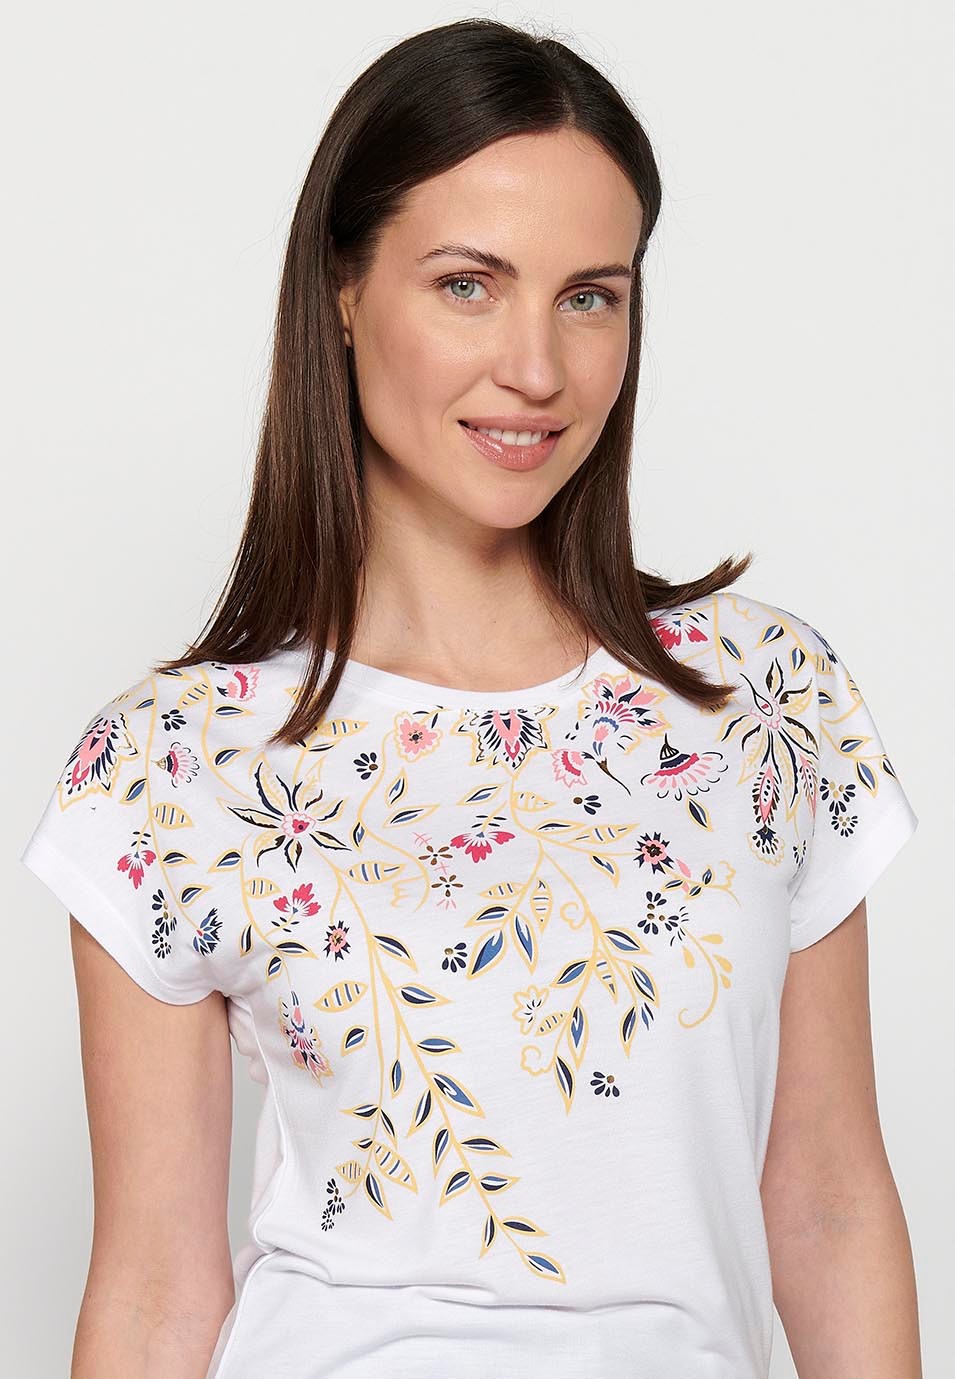 Samarreta Top de màniga curta de cotó de Coll rodó amb Brodat floral davanter color Blanc per a Dona